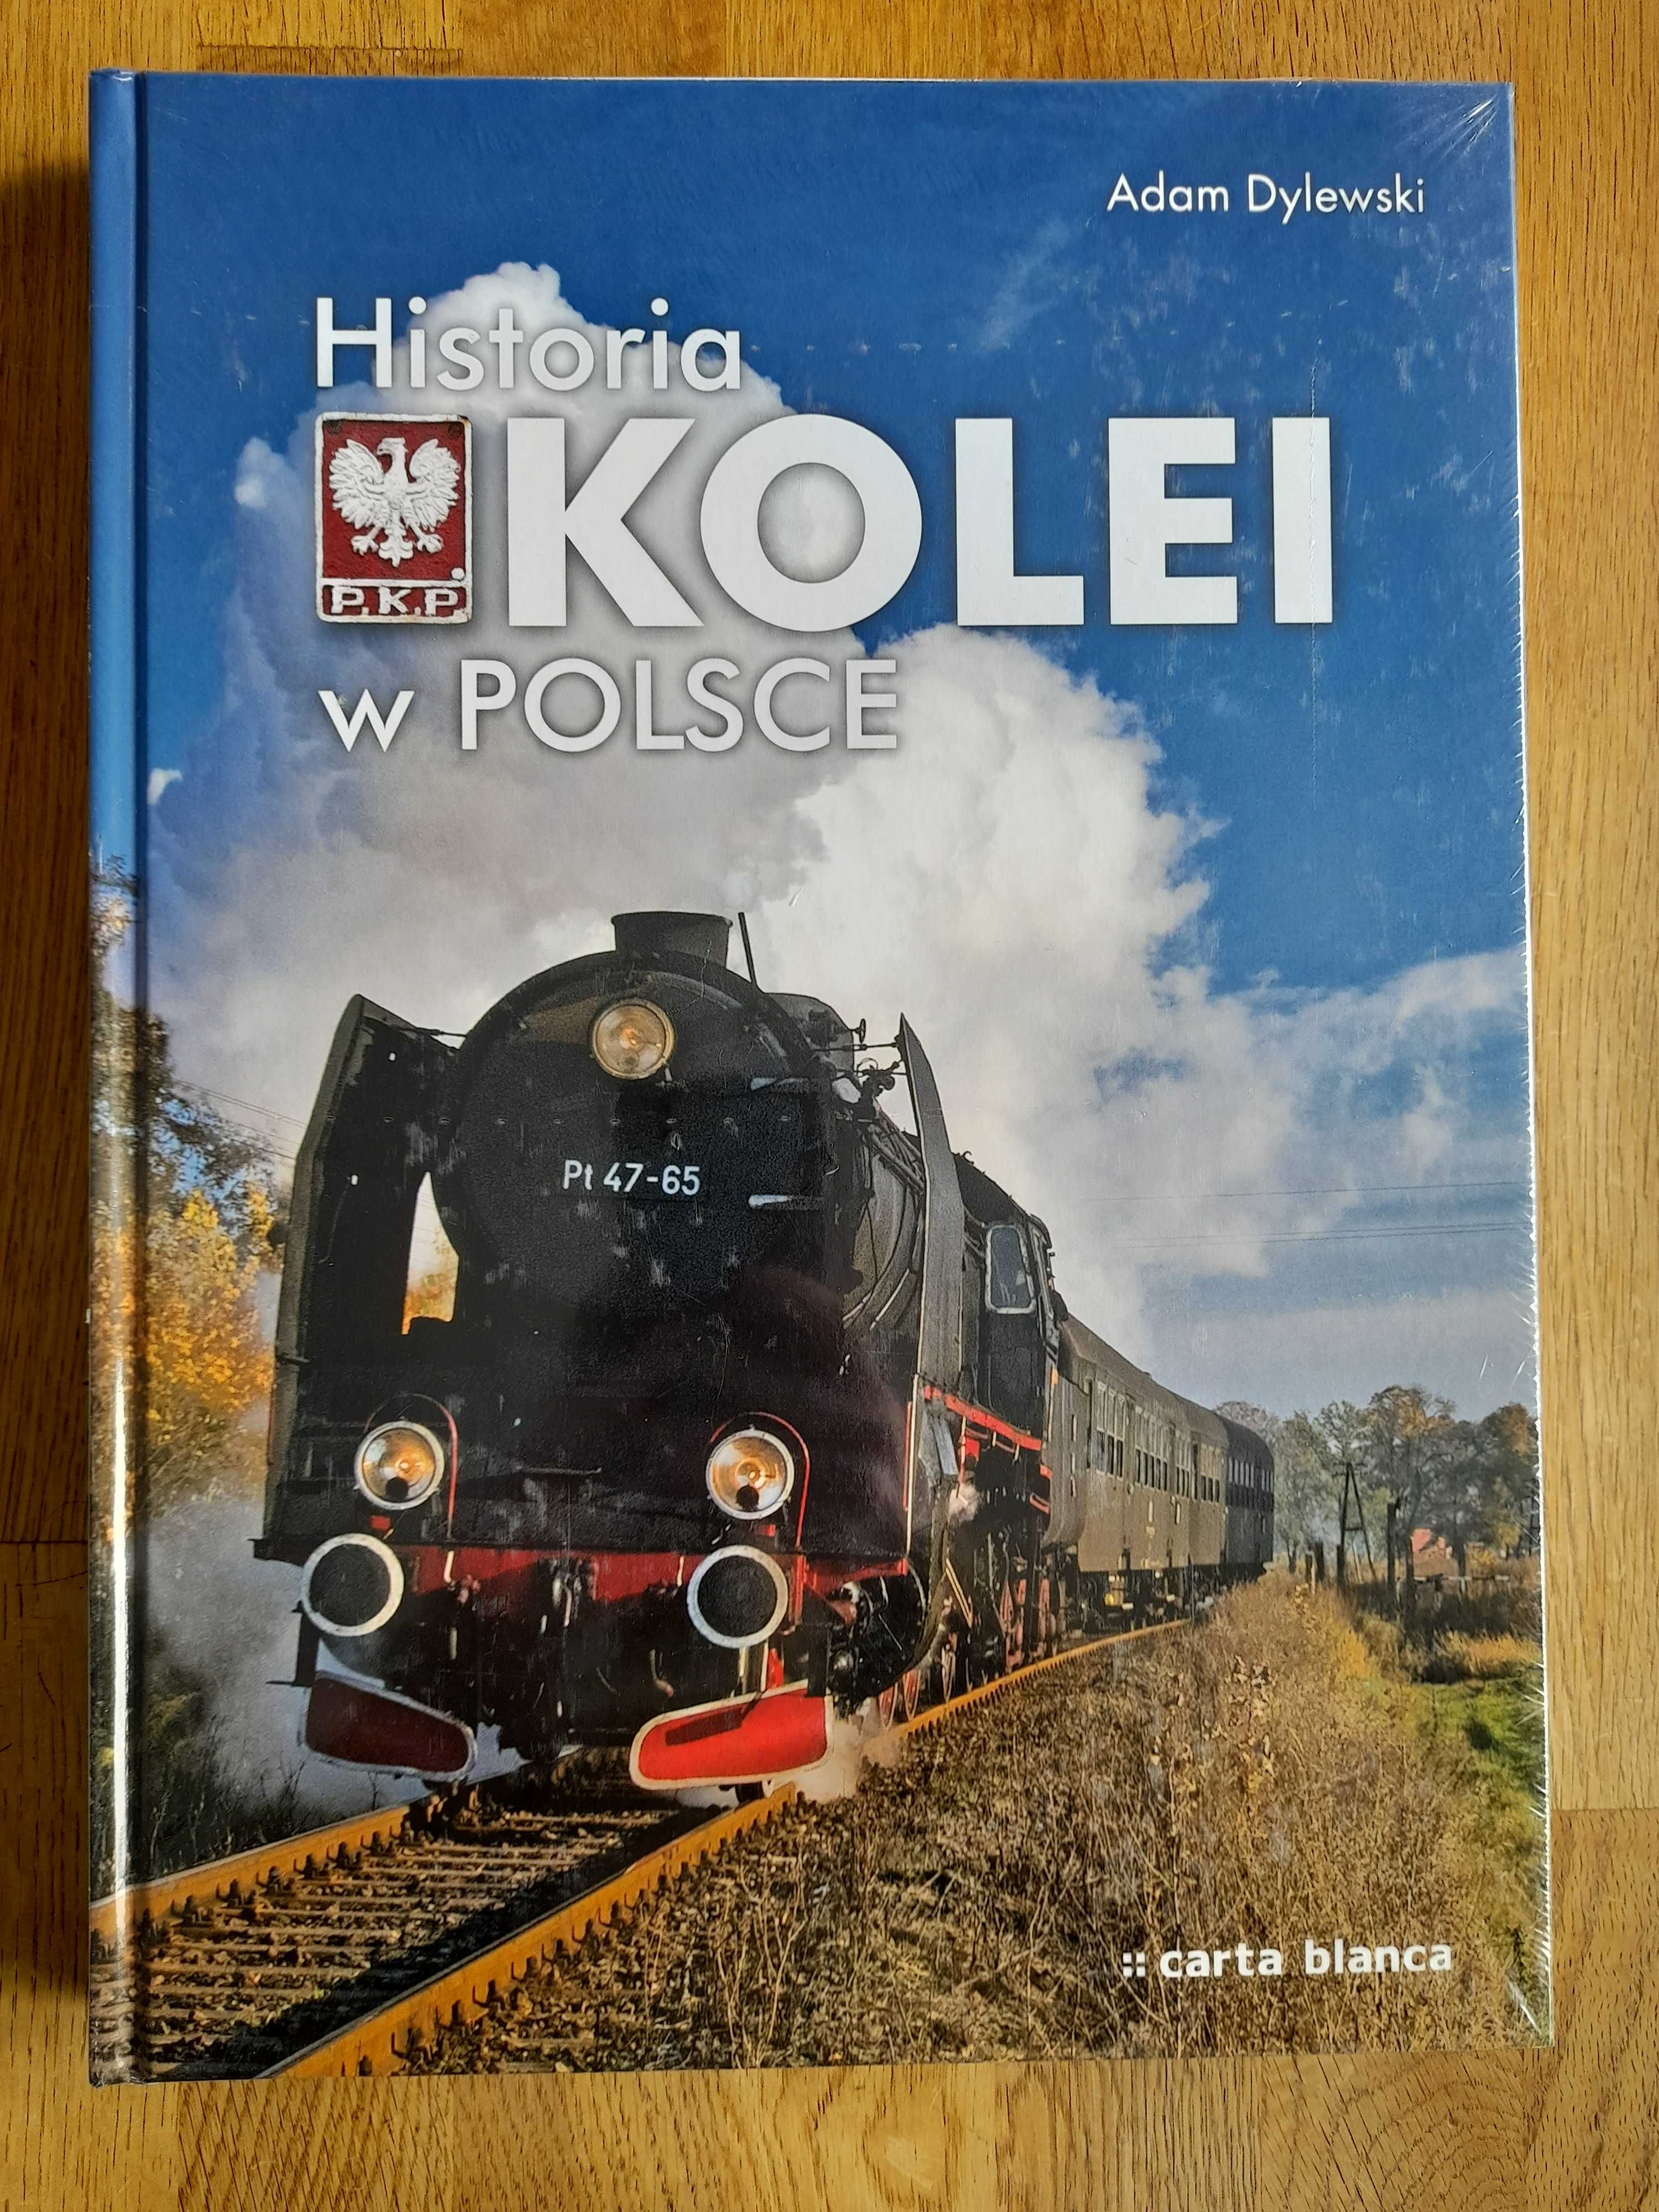 Historia kolei w polsce